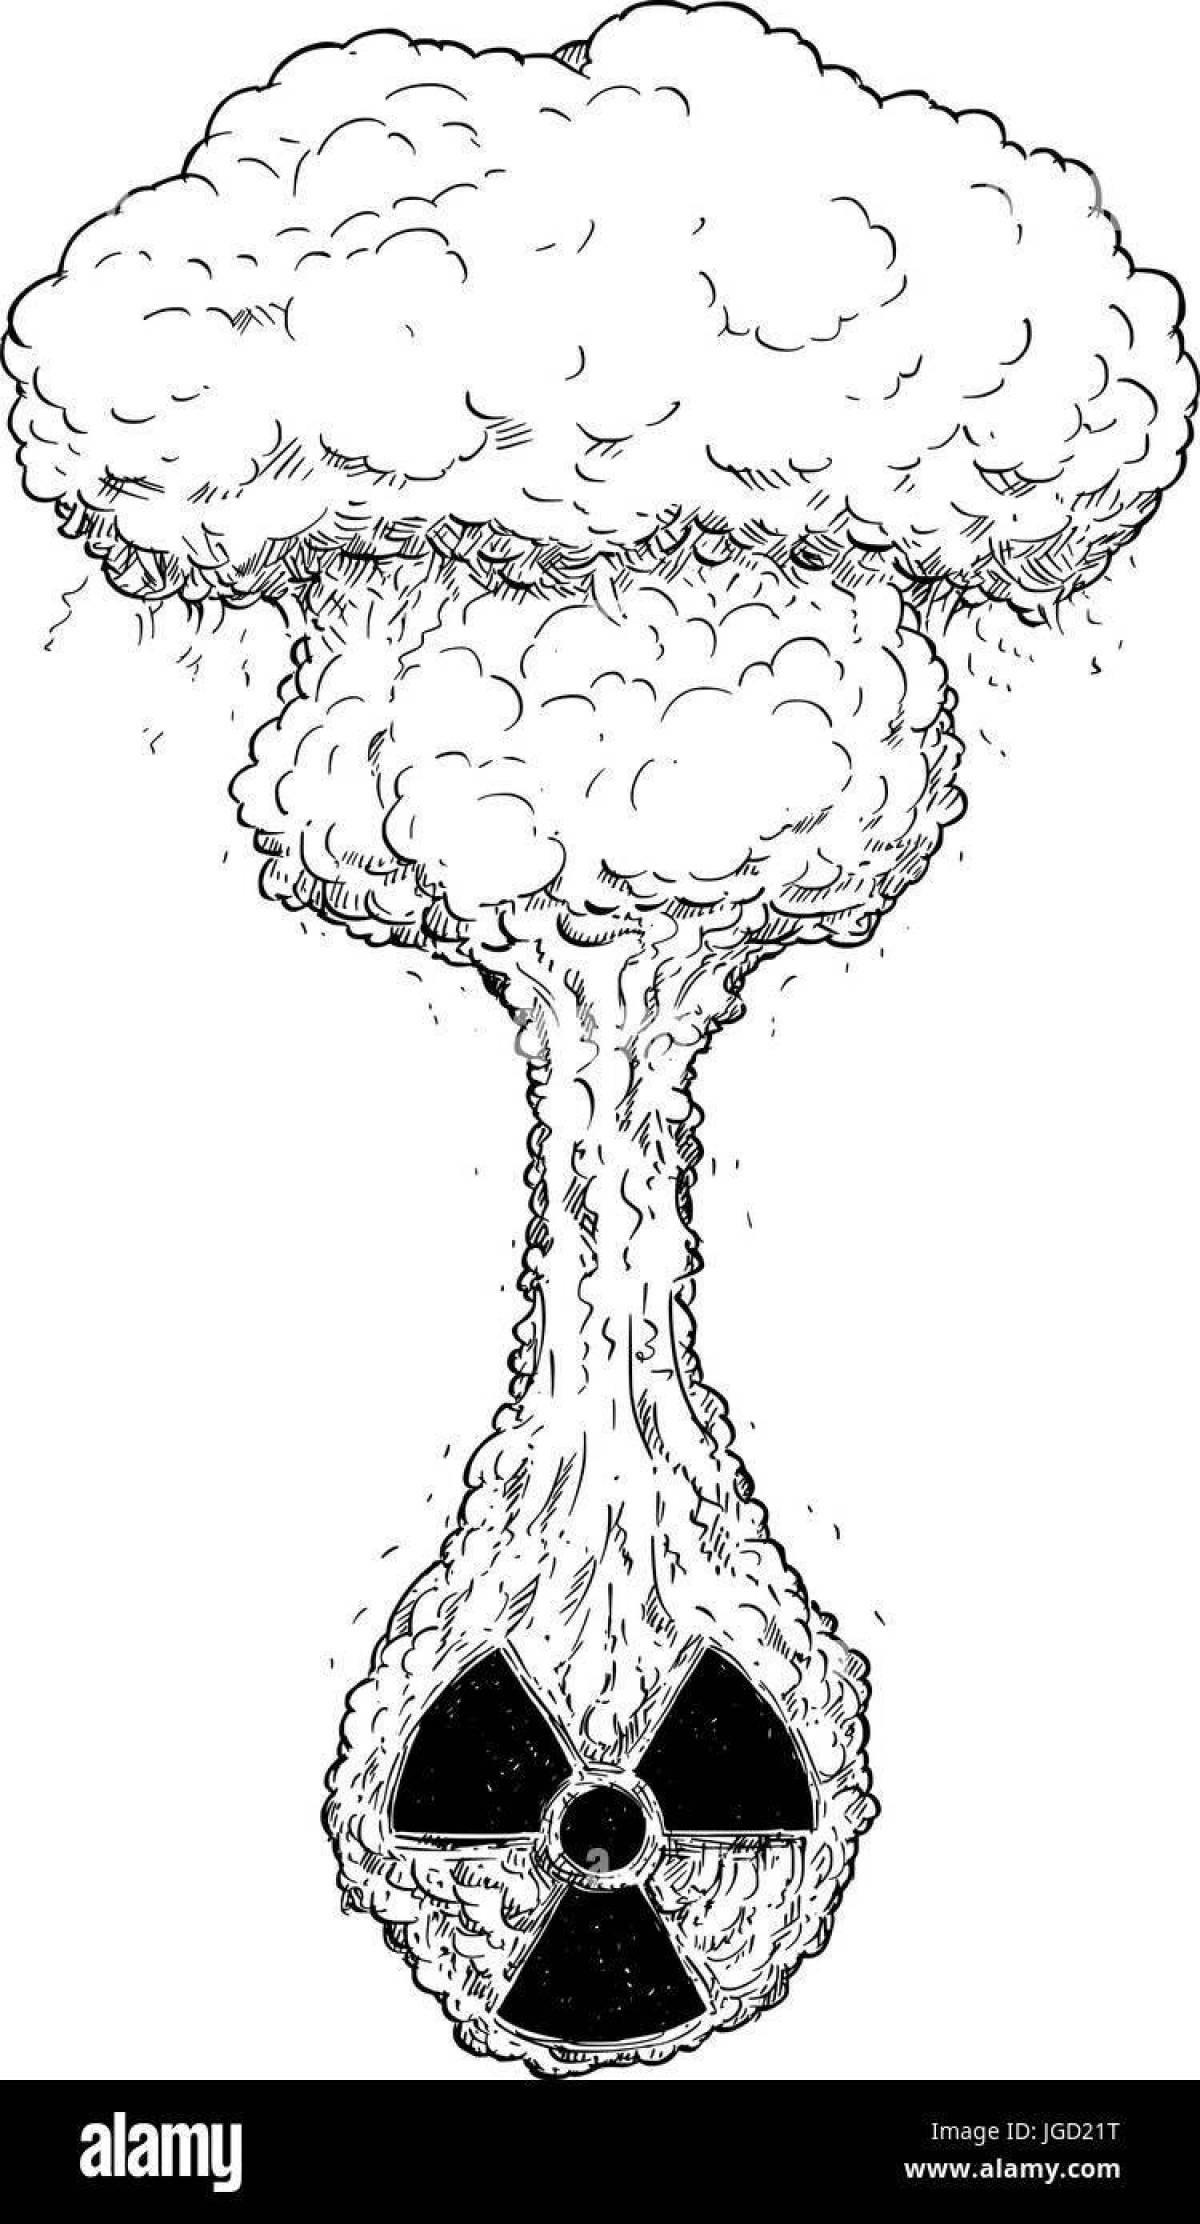 Замысловатая страница раскраски ядерной бомбы